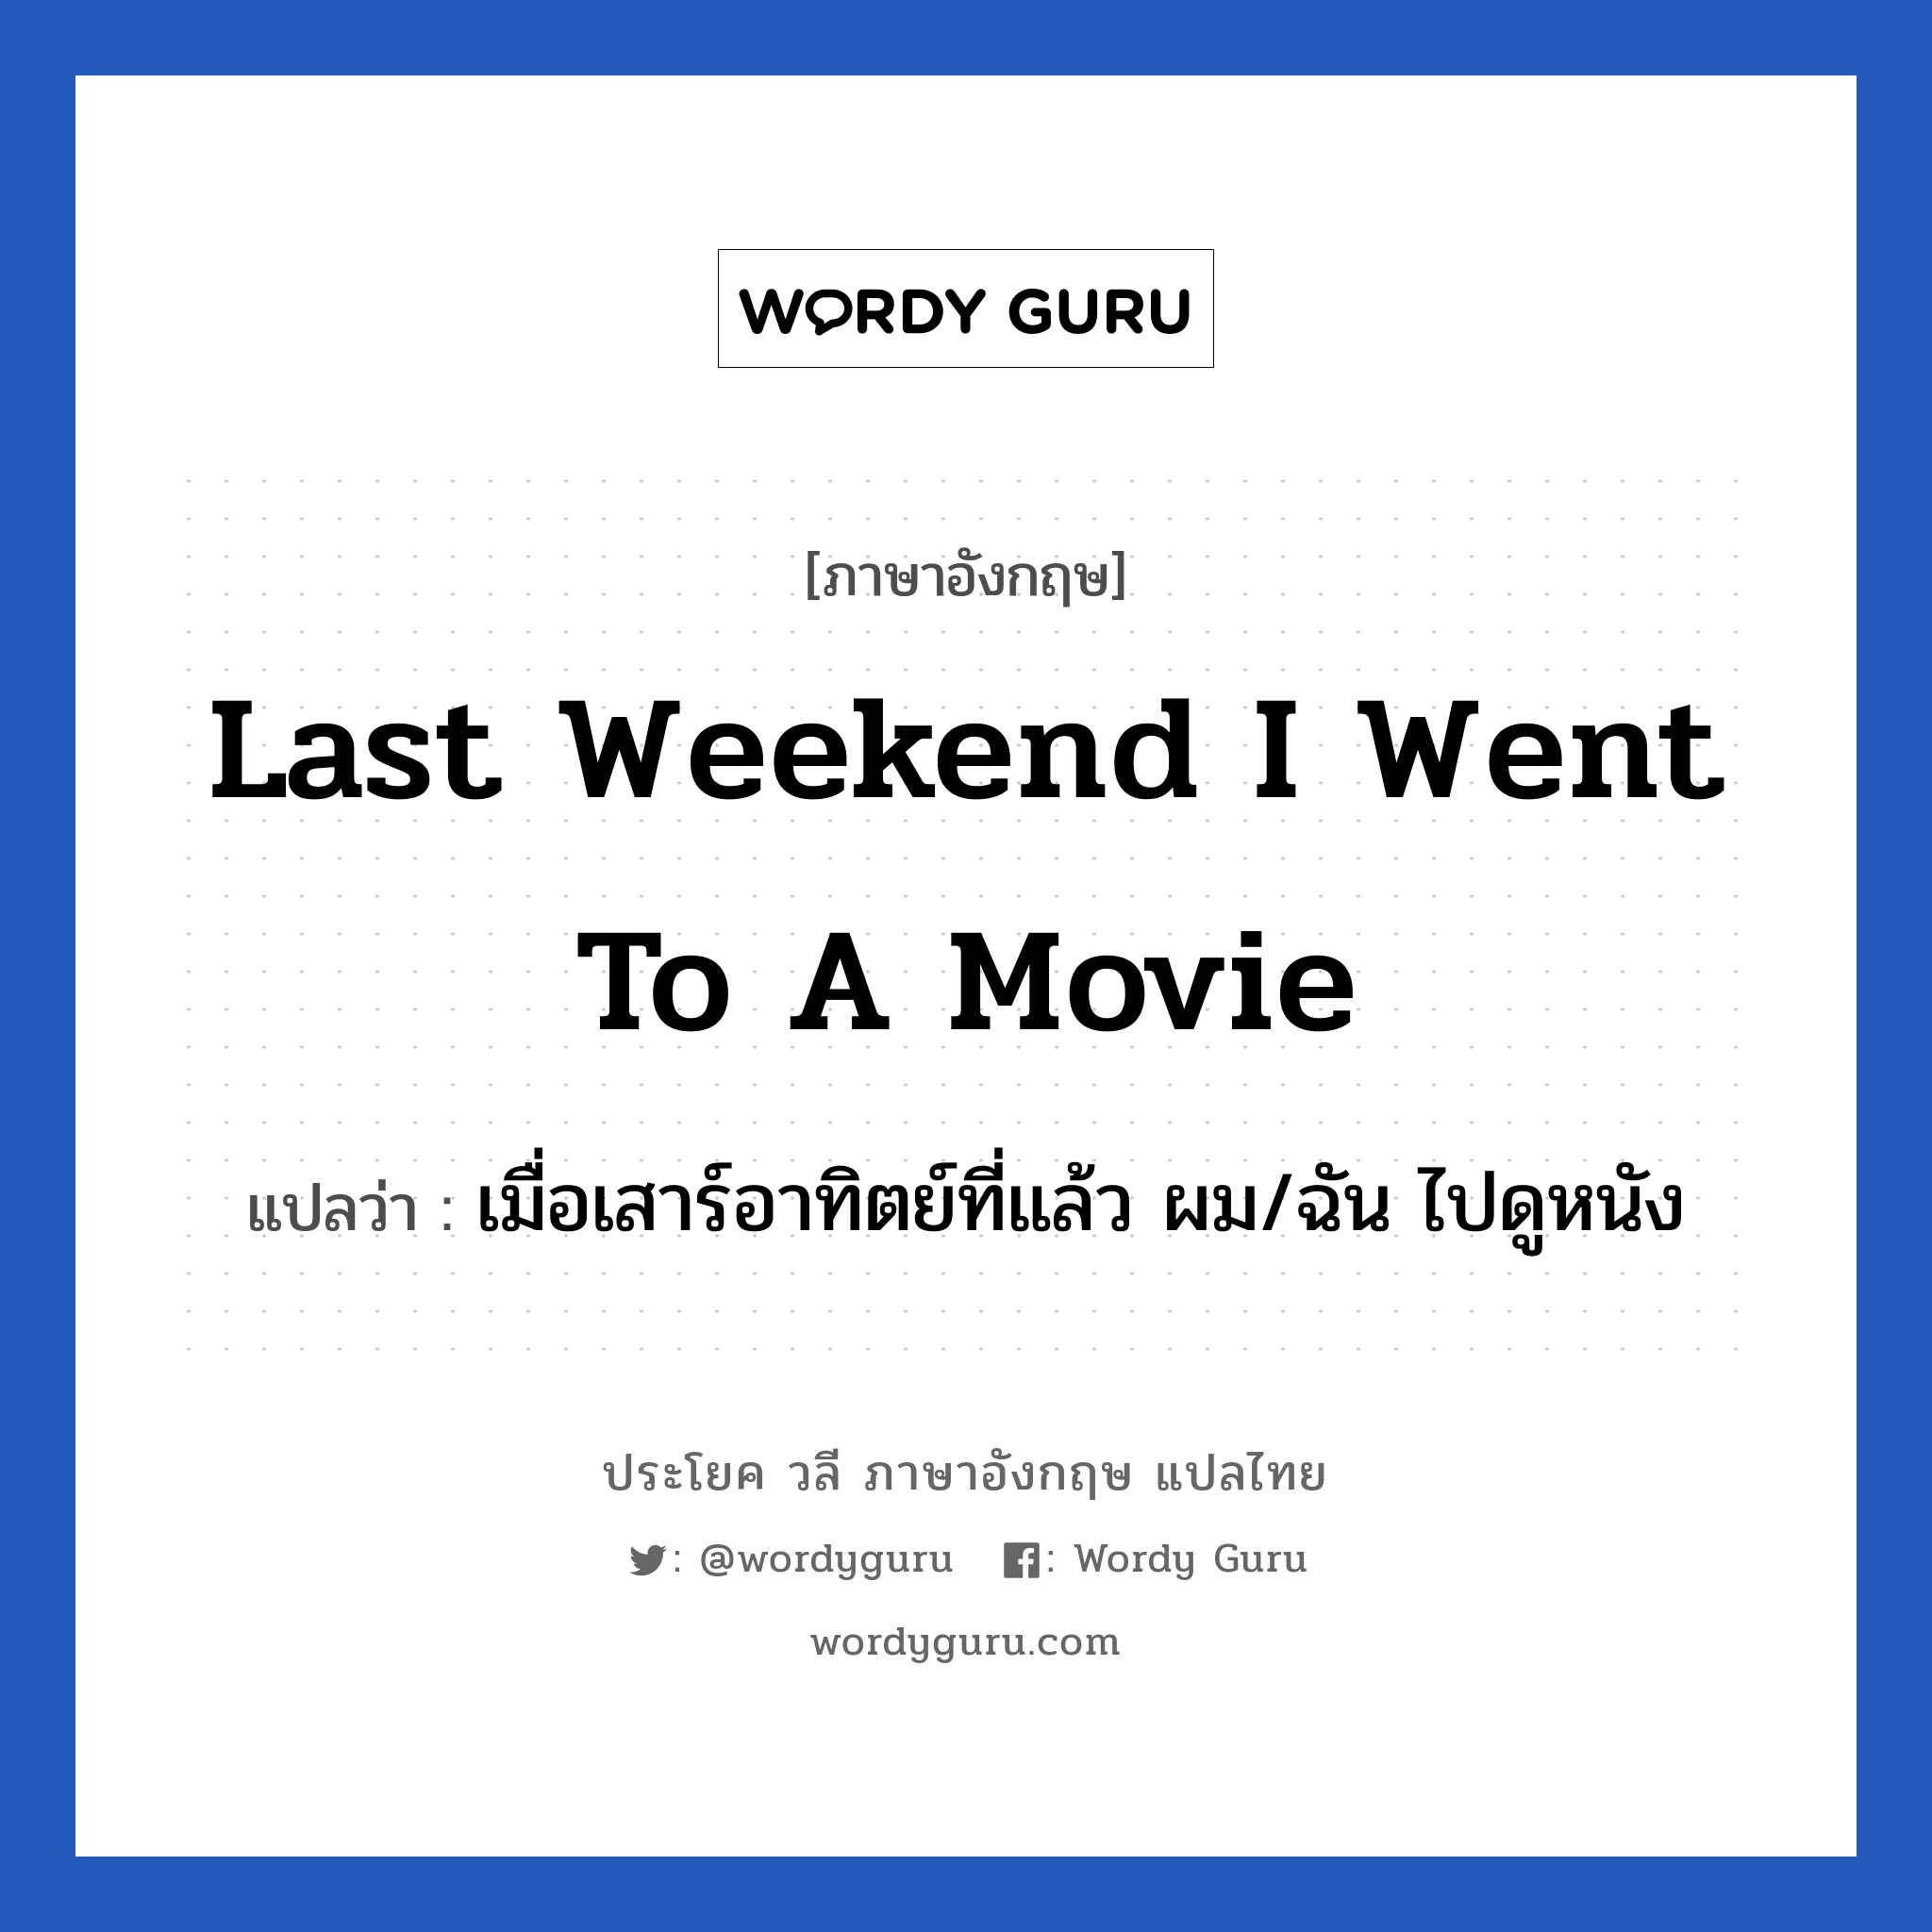 เมื่อเสาร์อาทิตย์ที่แล้ว ผม/ฉัน ไปดูหนัง ภาษาอังกฤษ?, วลีภาษาอังกฤษ เมื่อเสาร์อาทิตย์ที่แล้ว ผม/ฉัน ไปดูหนัง แปลว่า Last weekend I went to a movie